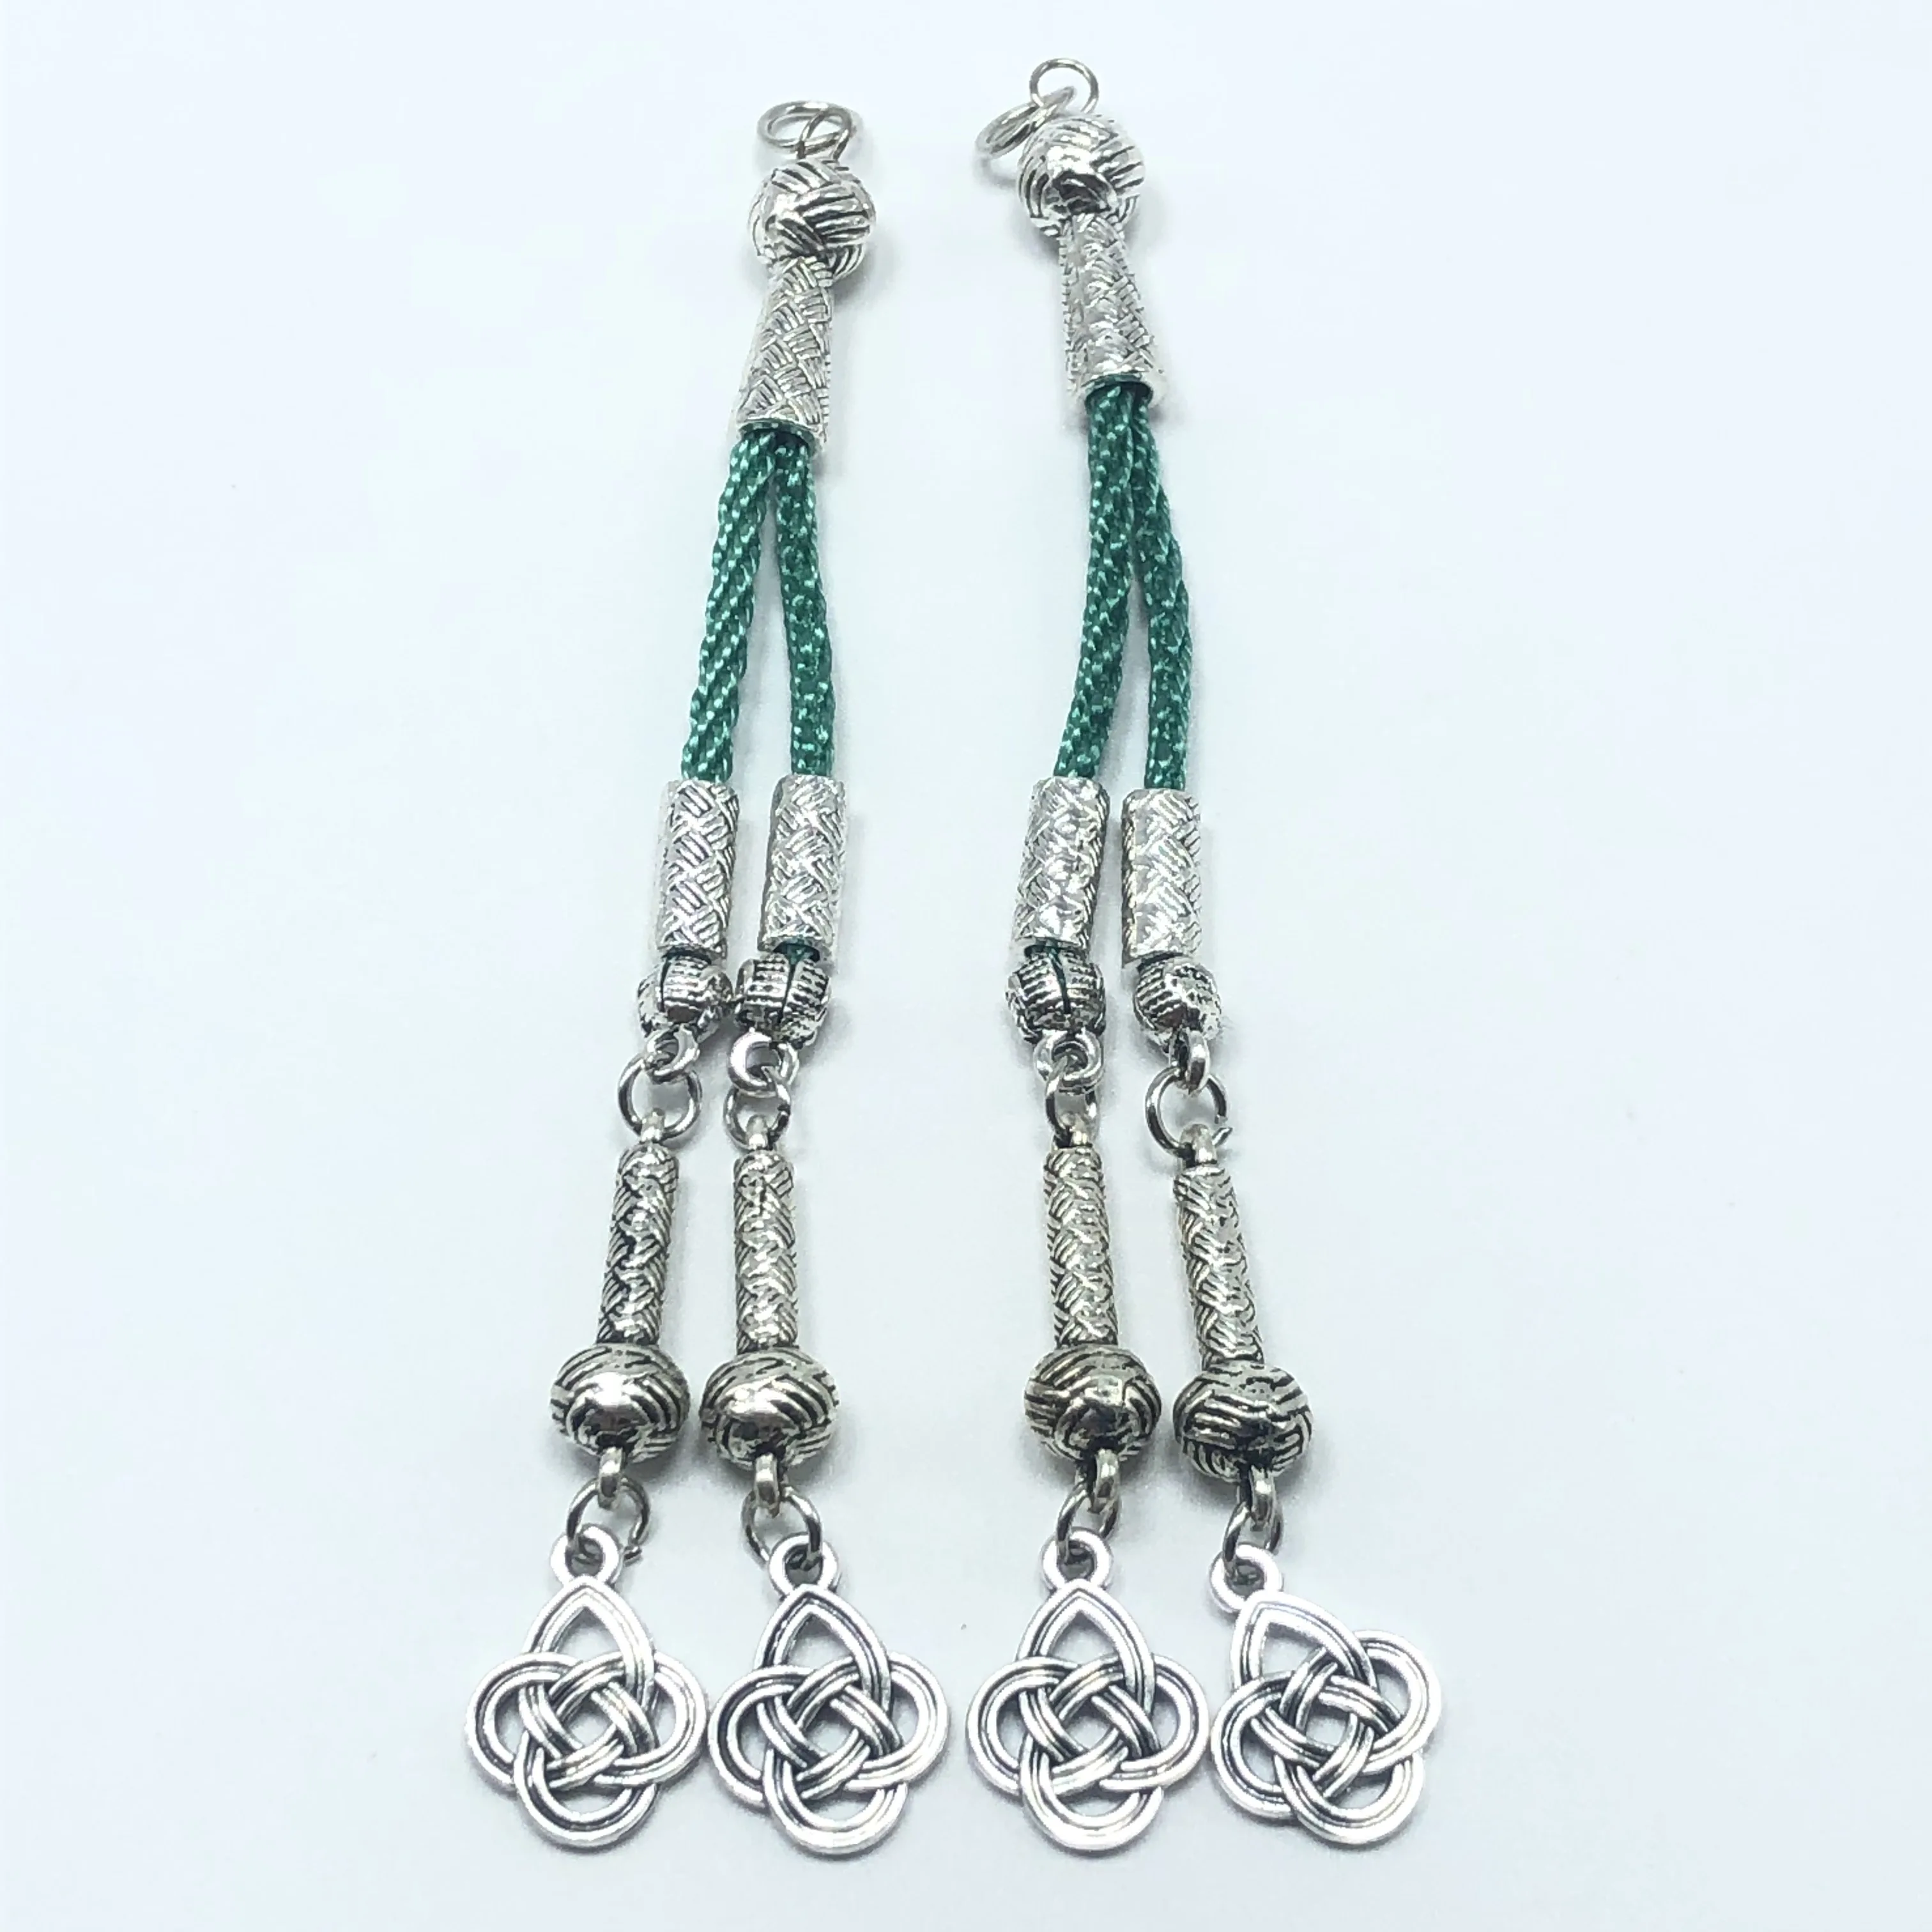 2 шт 11 см популярный турецкий китайский узел четки кулон DIY ручной работы браслет ожерелье ювелирные аксессуары